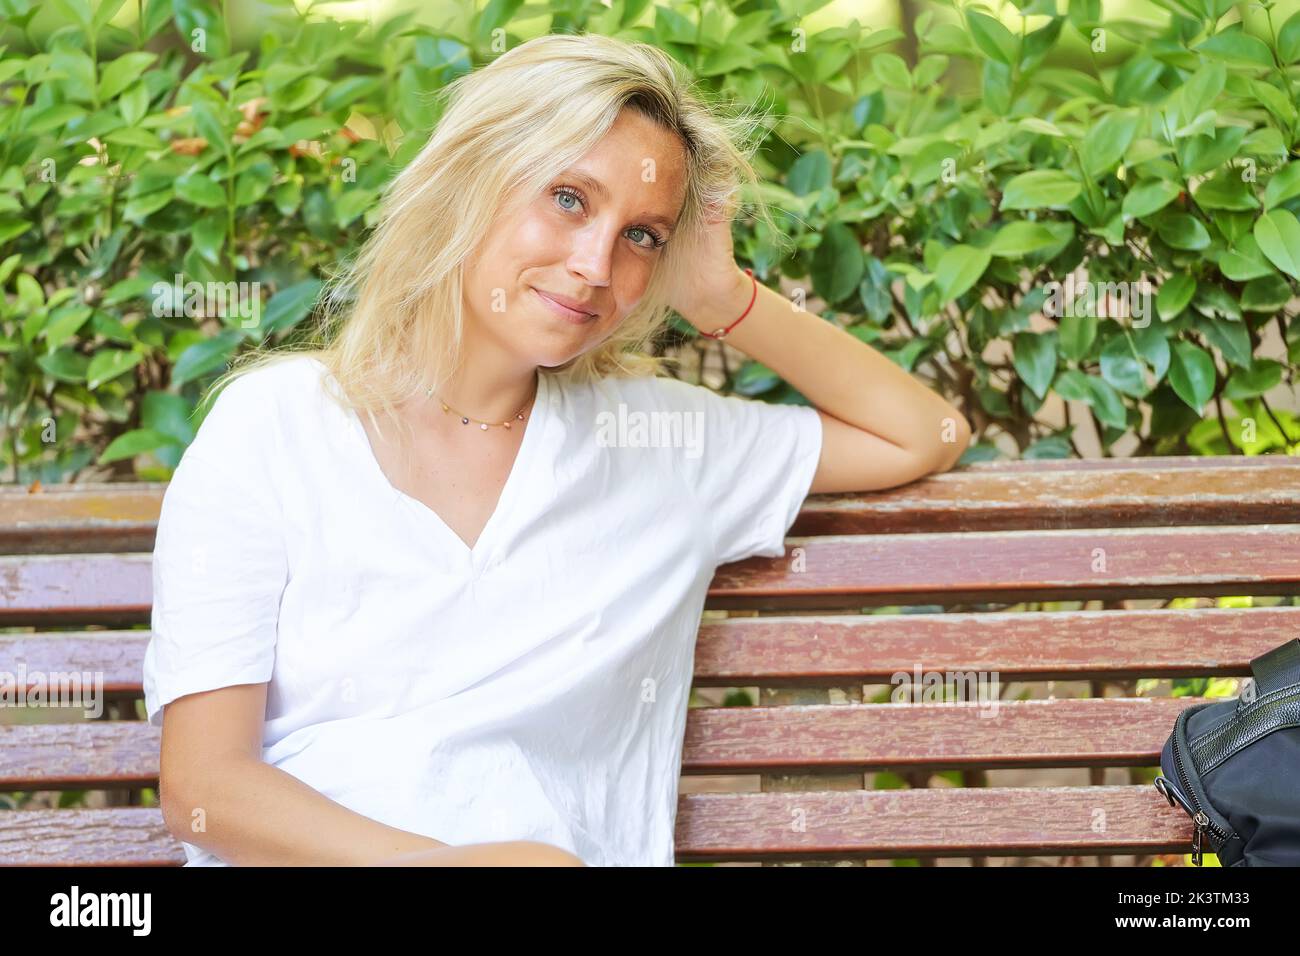 Primo piano di una giovane donna che guarda la macchina fotografica e sorride mentre si siede su una panchina in un parco. Foto Stock